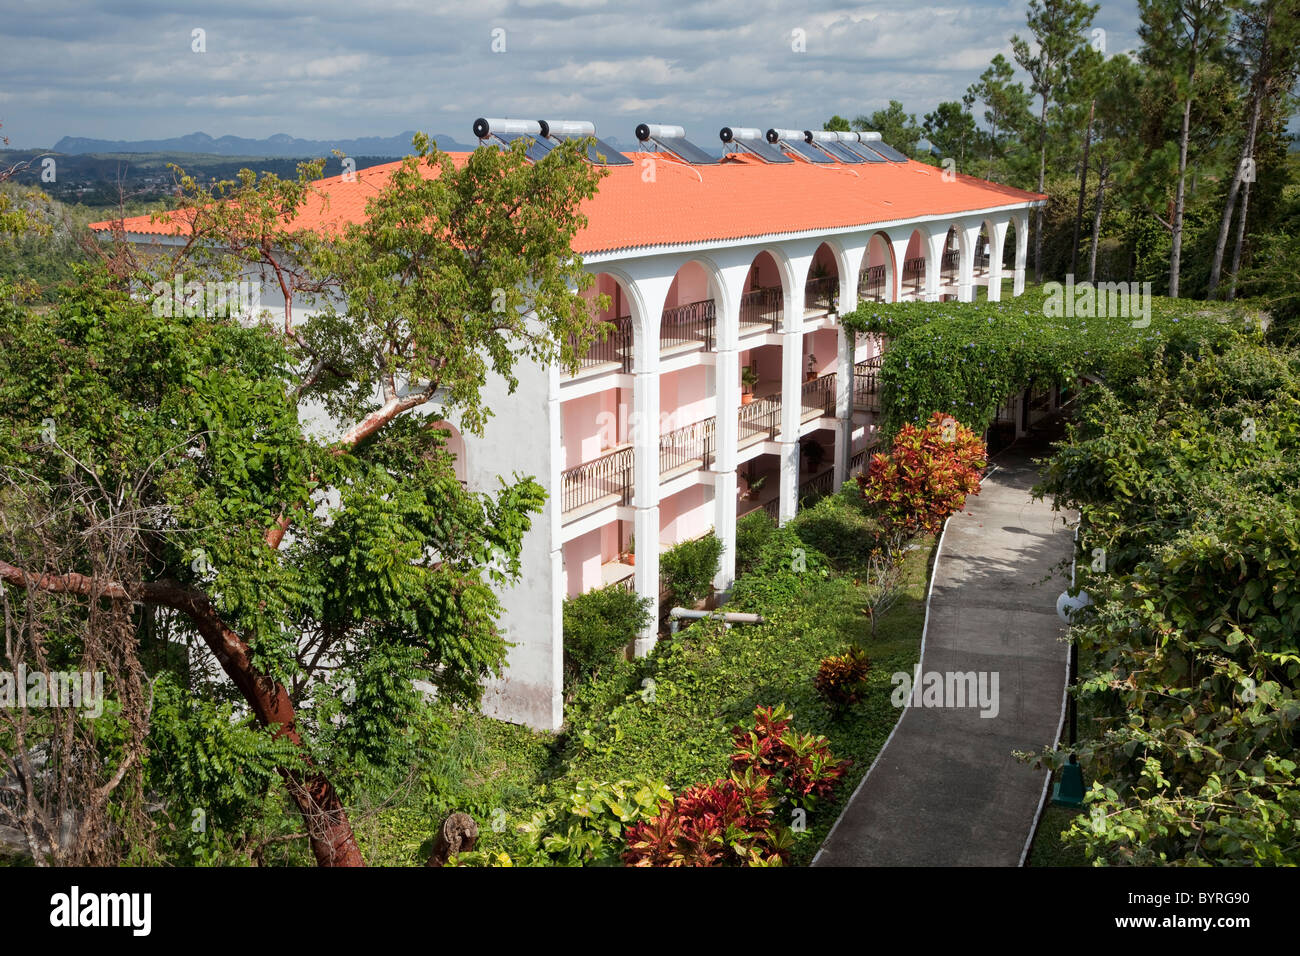 Cuba, Pinar del Rio Regione, Viñales (Vinales) Area. Pannelli fotovoltaici sul tetto dell'Hotel. Foto Stock